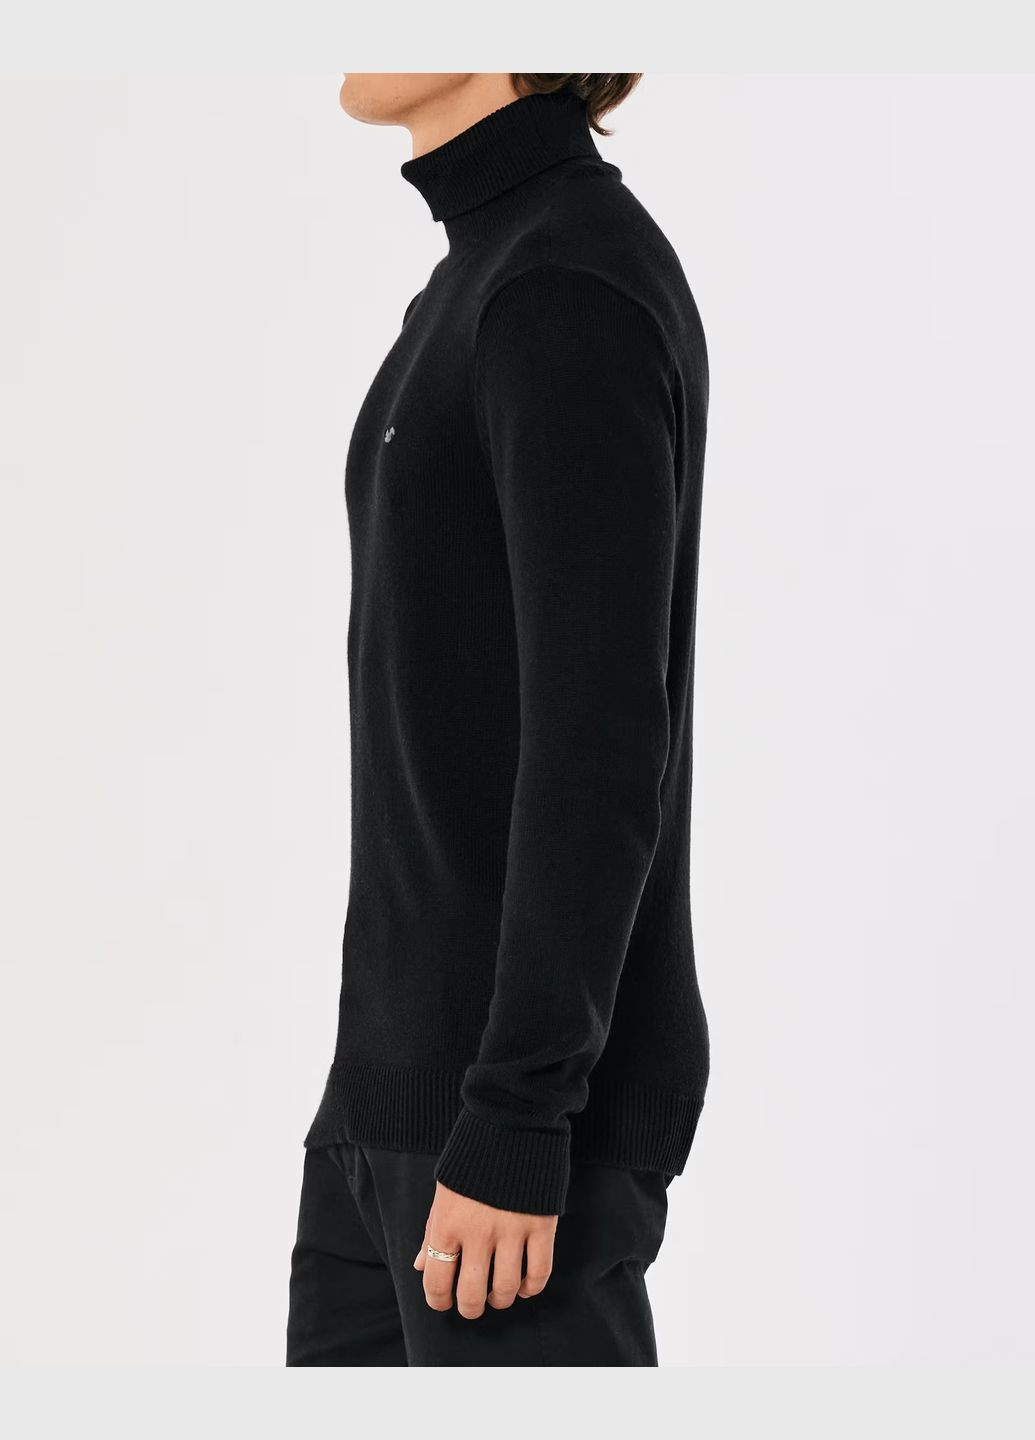 Черный демисезонный свитер мужской - свитер hc9497m Hollister